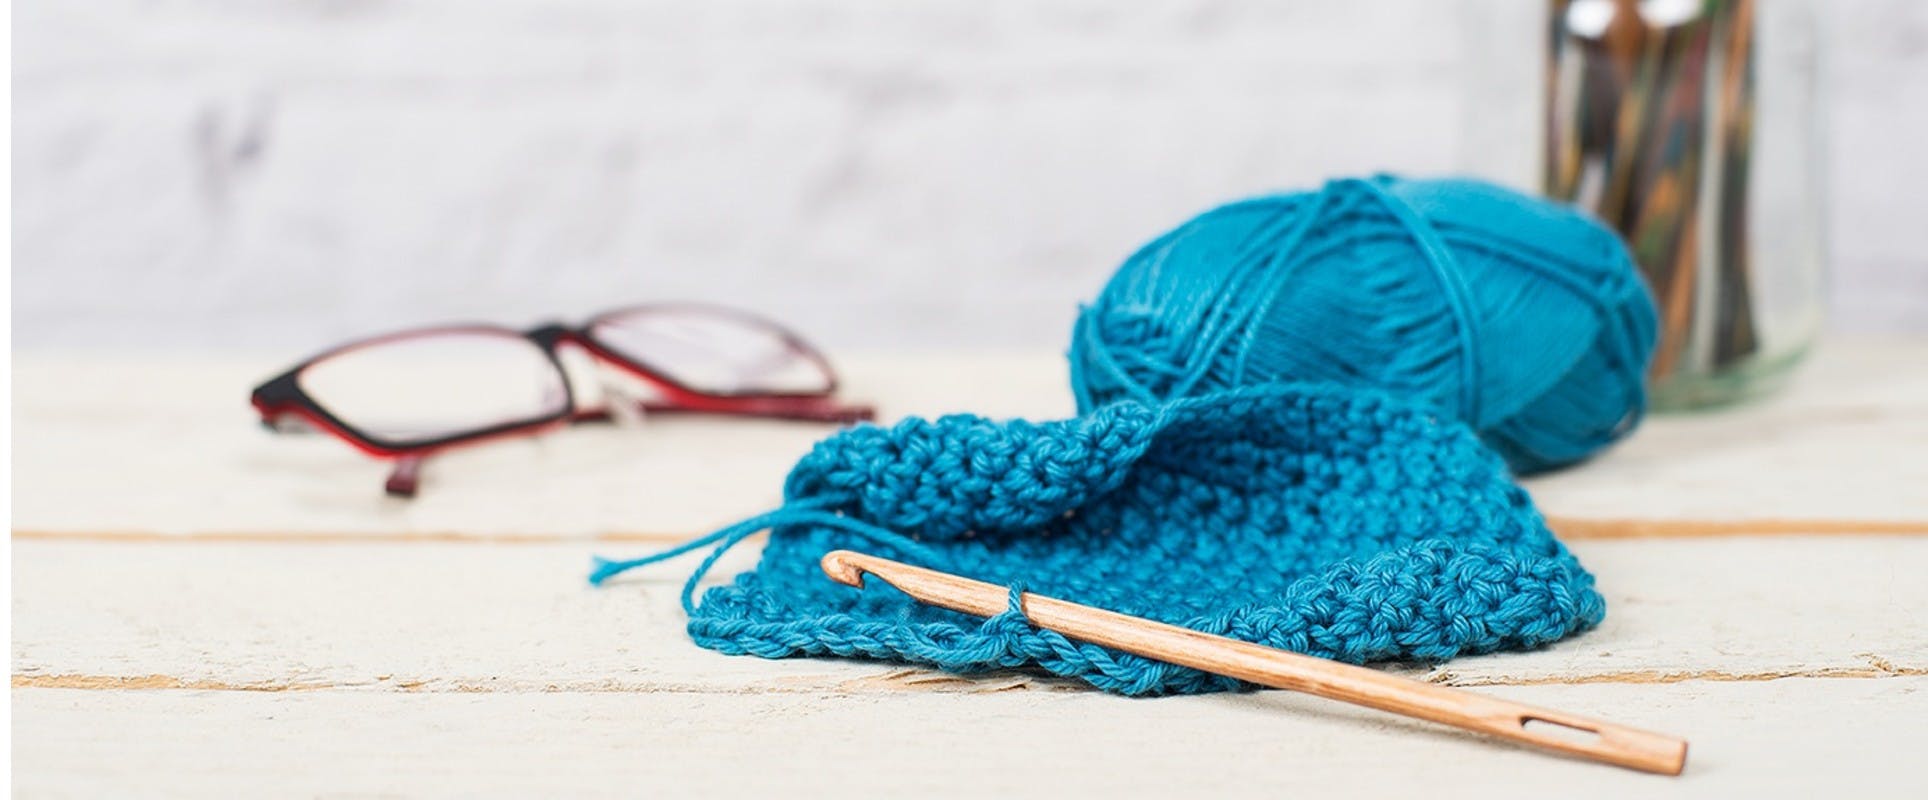 Large Wooden Crochet Hook Set for Chunky Yarn,Hooks Needles for